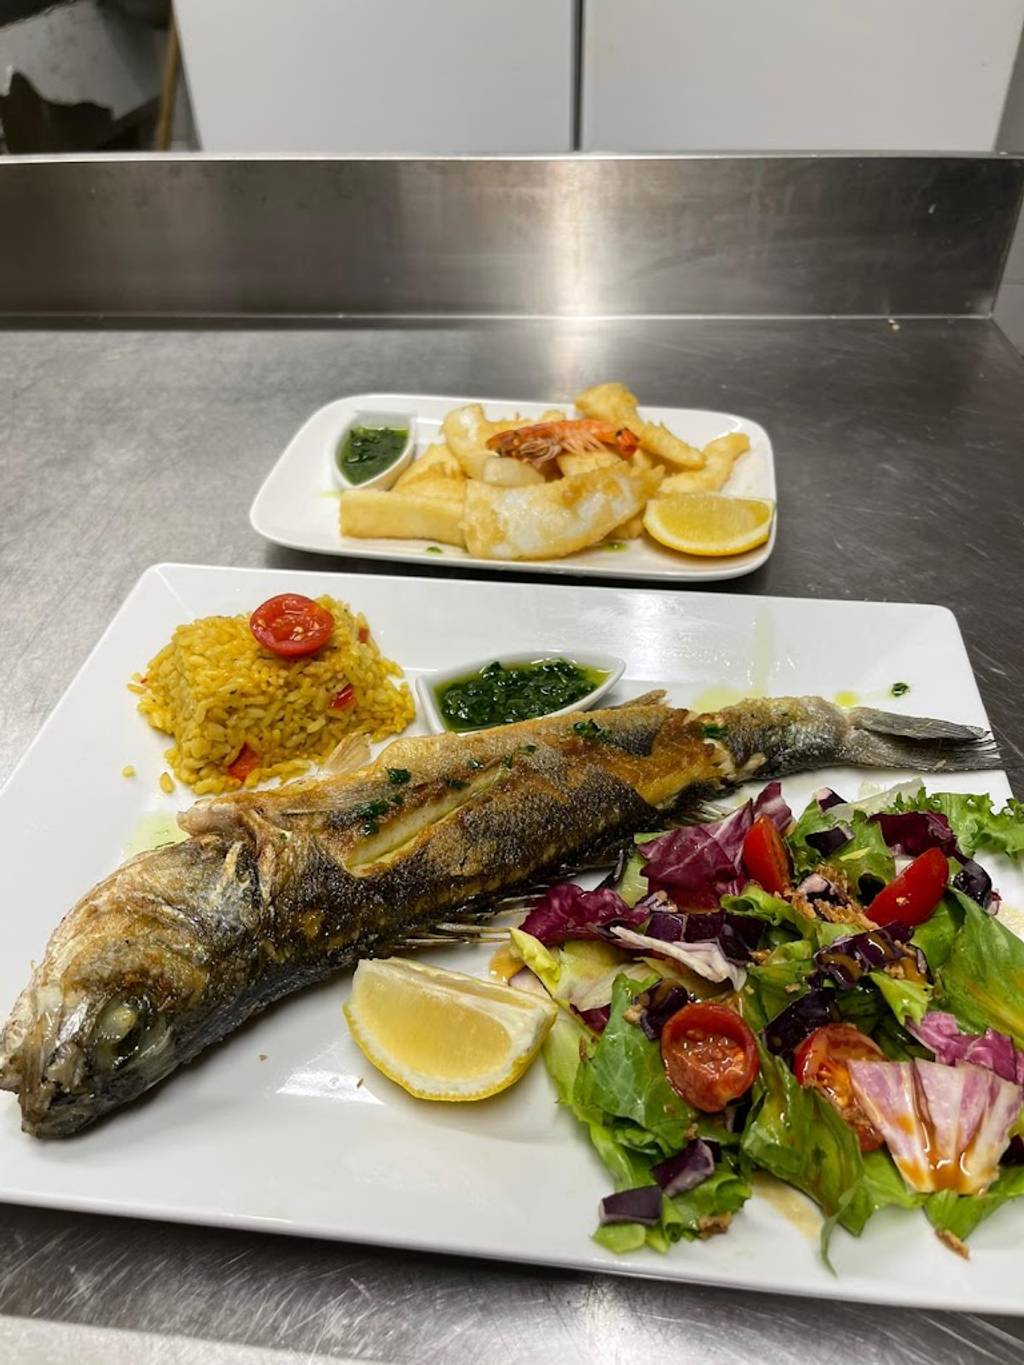 ÔCHWAYA Restaurant Nîmes - Food Tableware Ingredient Plate Recipe